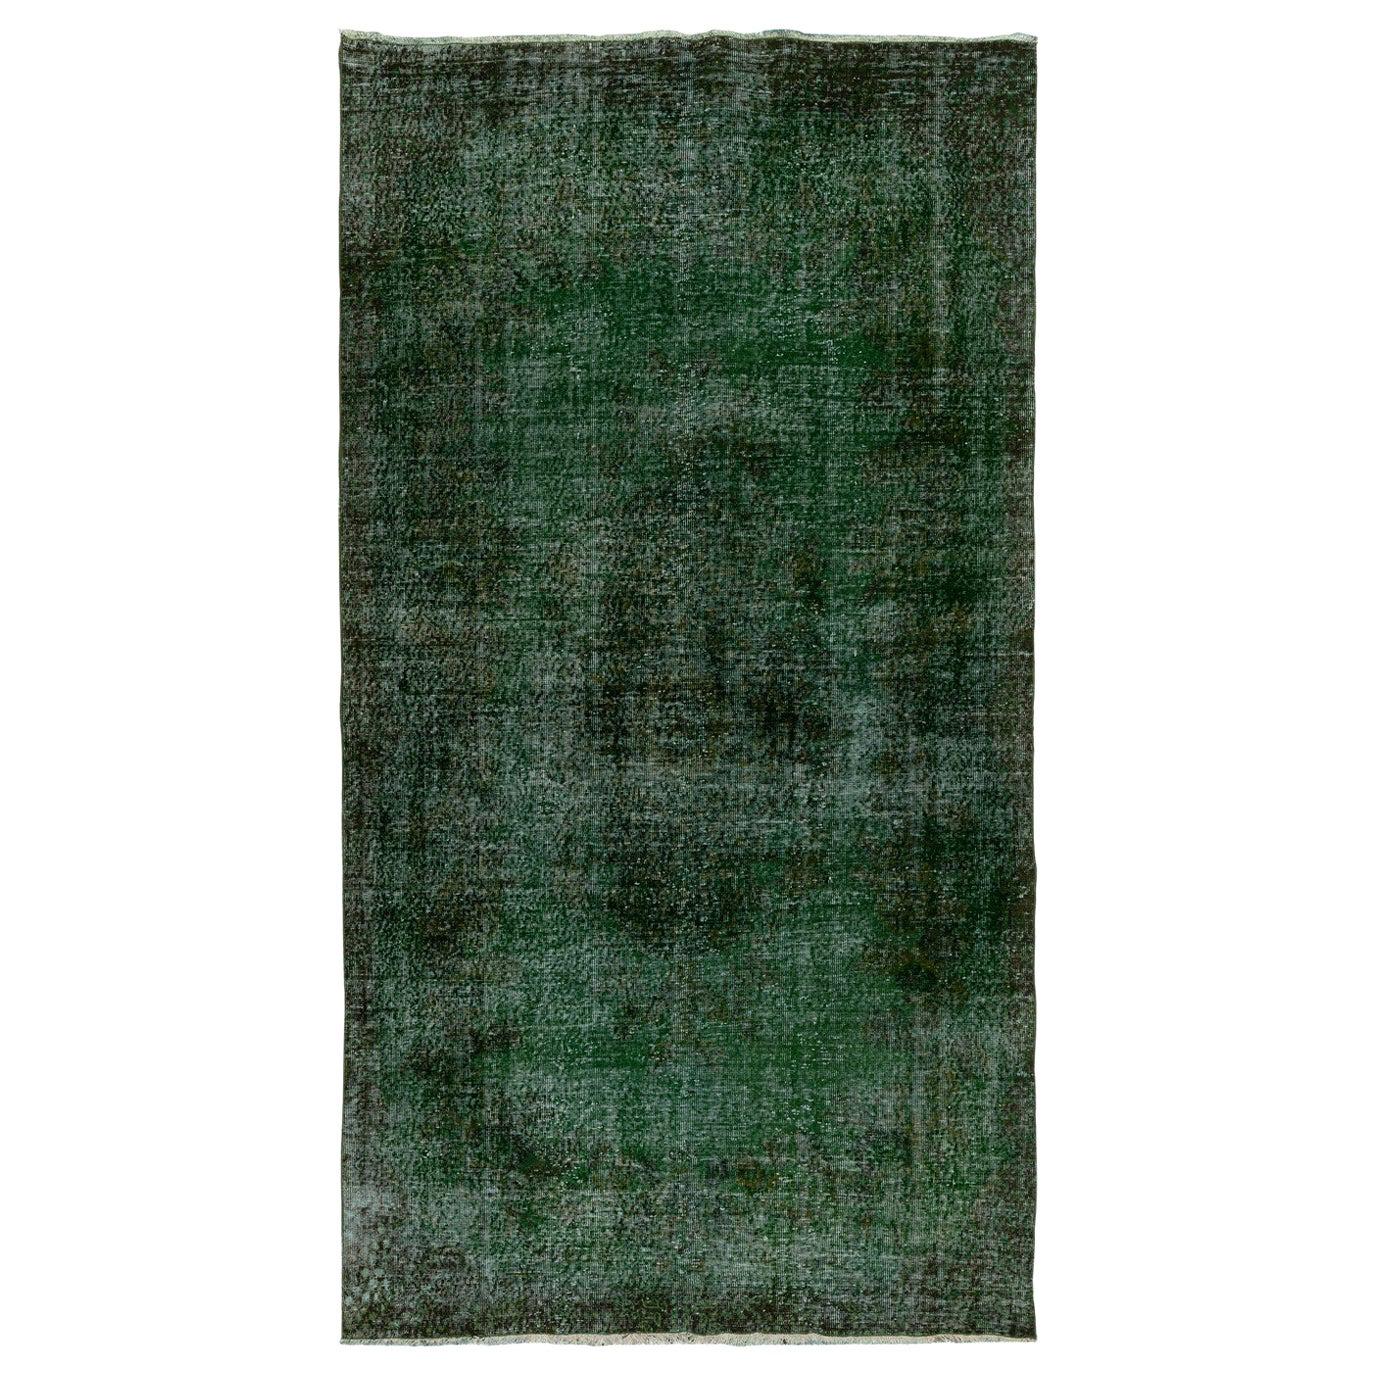 6x11 Ft Distressed Vintage Handgefertigter Teppich in grüner Farbe. Moderner anatolischer Teppich